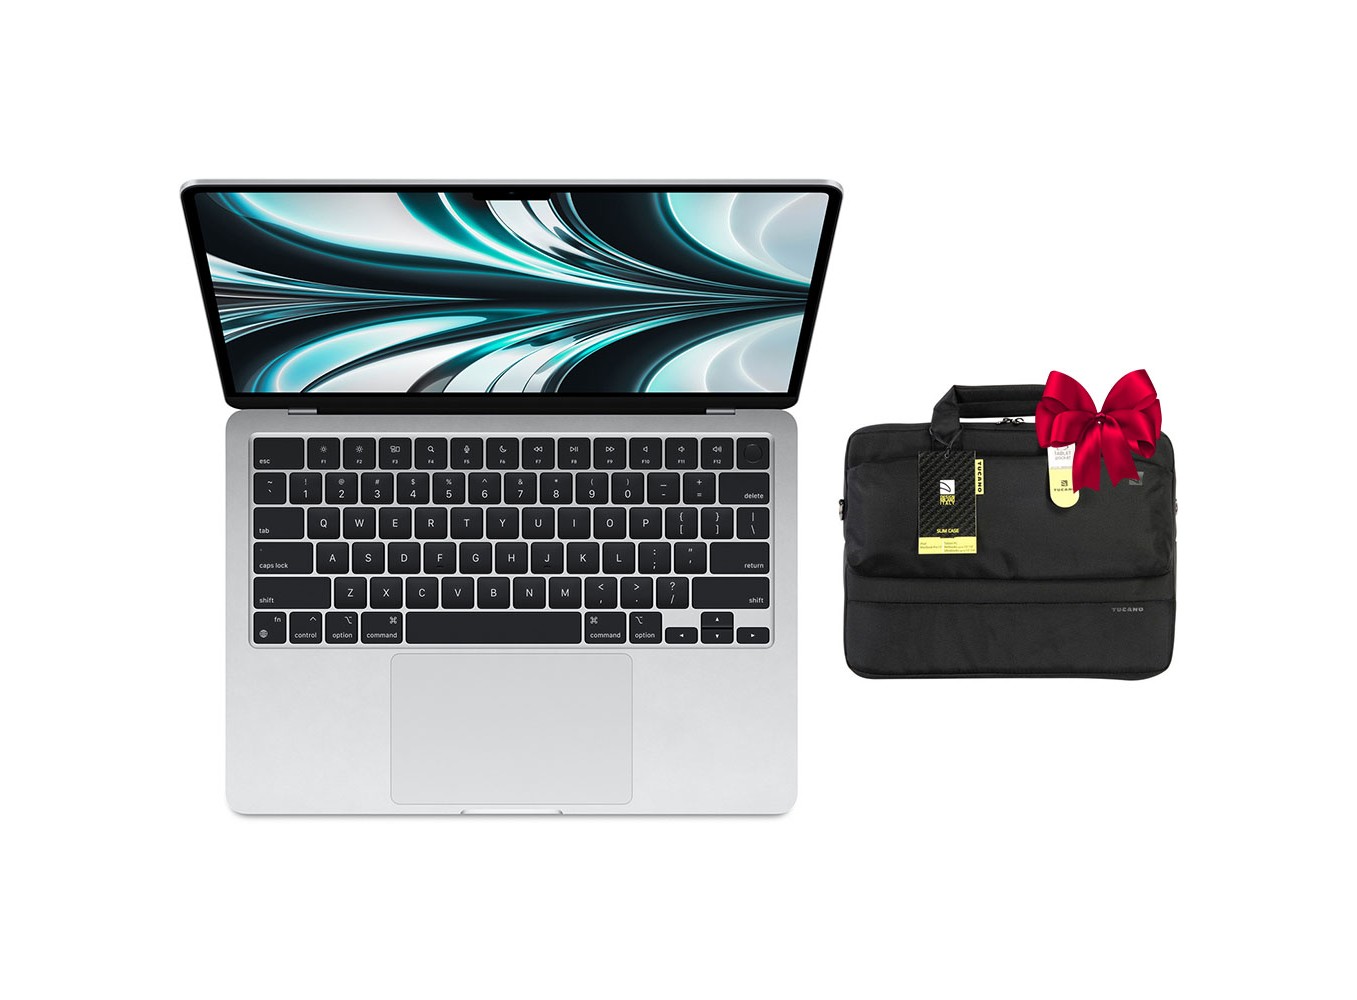 MacBook Air 13.6in: MacBook Air 13.6in là chiếc laptop hoàn hảo cho bạn đi đến bất cứ đâu và làm mọi thứ từ việc chỉnh sửa tài liệu đến giải trí. Trang bị cấu hình hiện đại bao gồm chip M1, màn hình Retina siêu nét và bộ lưu trữ SSD cực kỳ nhanh, chiếc laptop này là sự lựa chọn lý tưởng cho những người thường xuyên phải di chuyển, nhưng vẫn muốn có một chiếc laptop có cấu hình mạnh mẽ và thiết kế thanh lịch. Hãy thử trải nghiệm và cảm nhận sự thú vị khi sử dụng MacBook Air 13.6in.